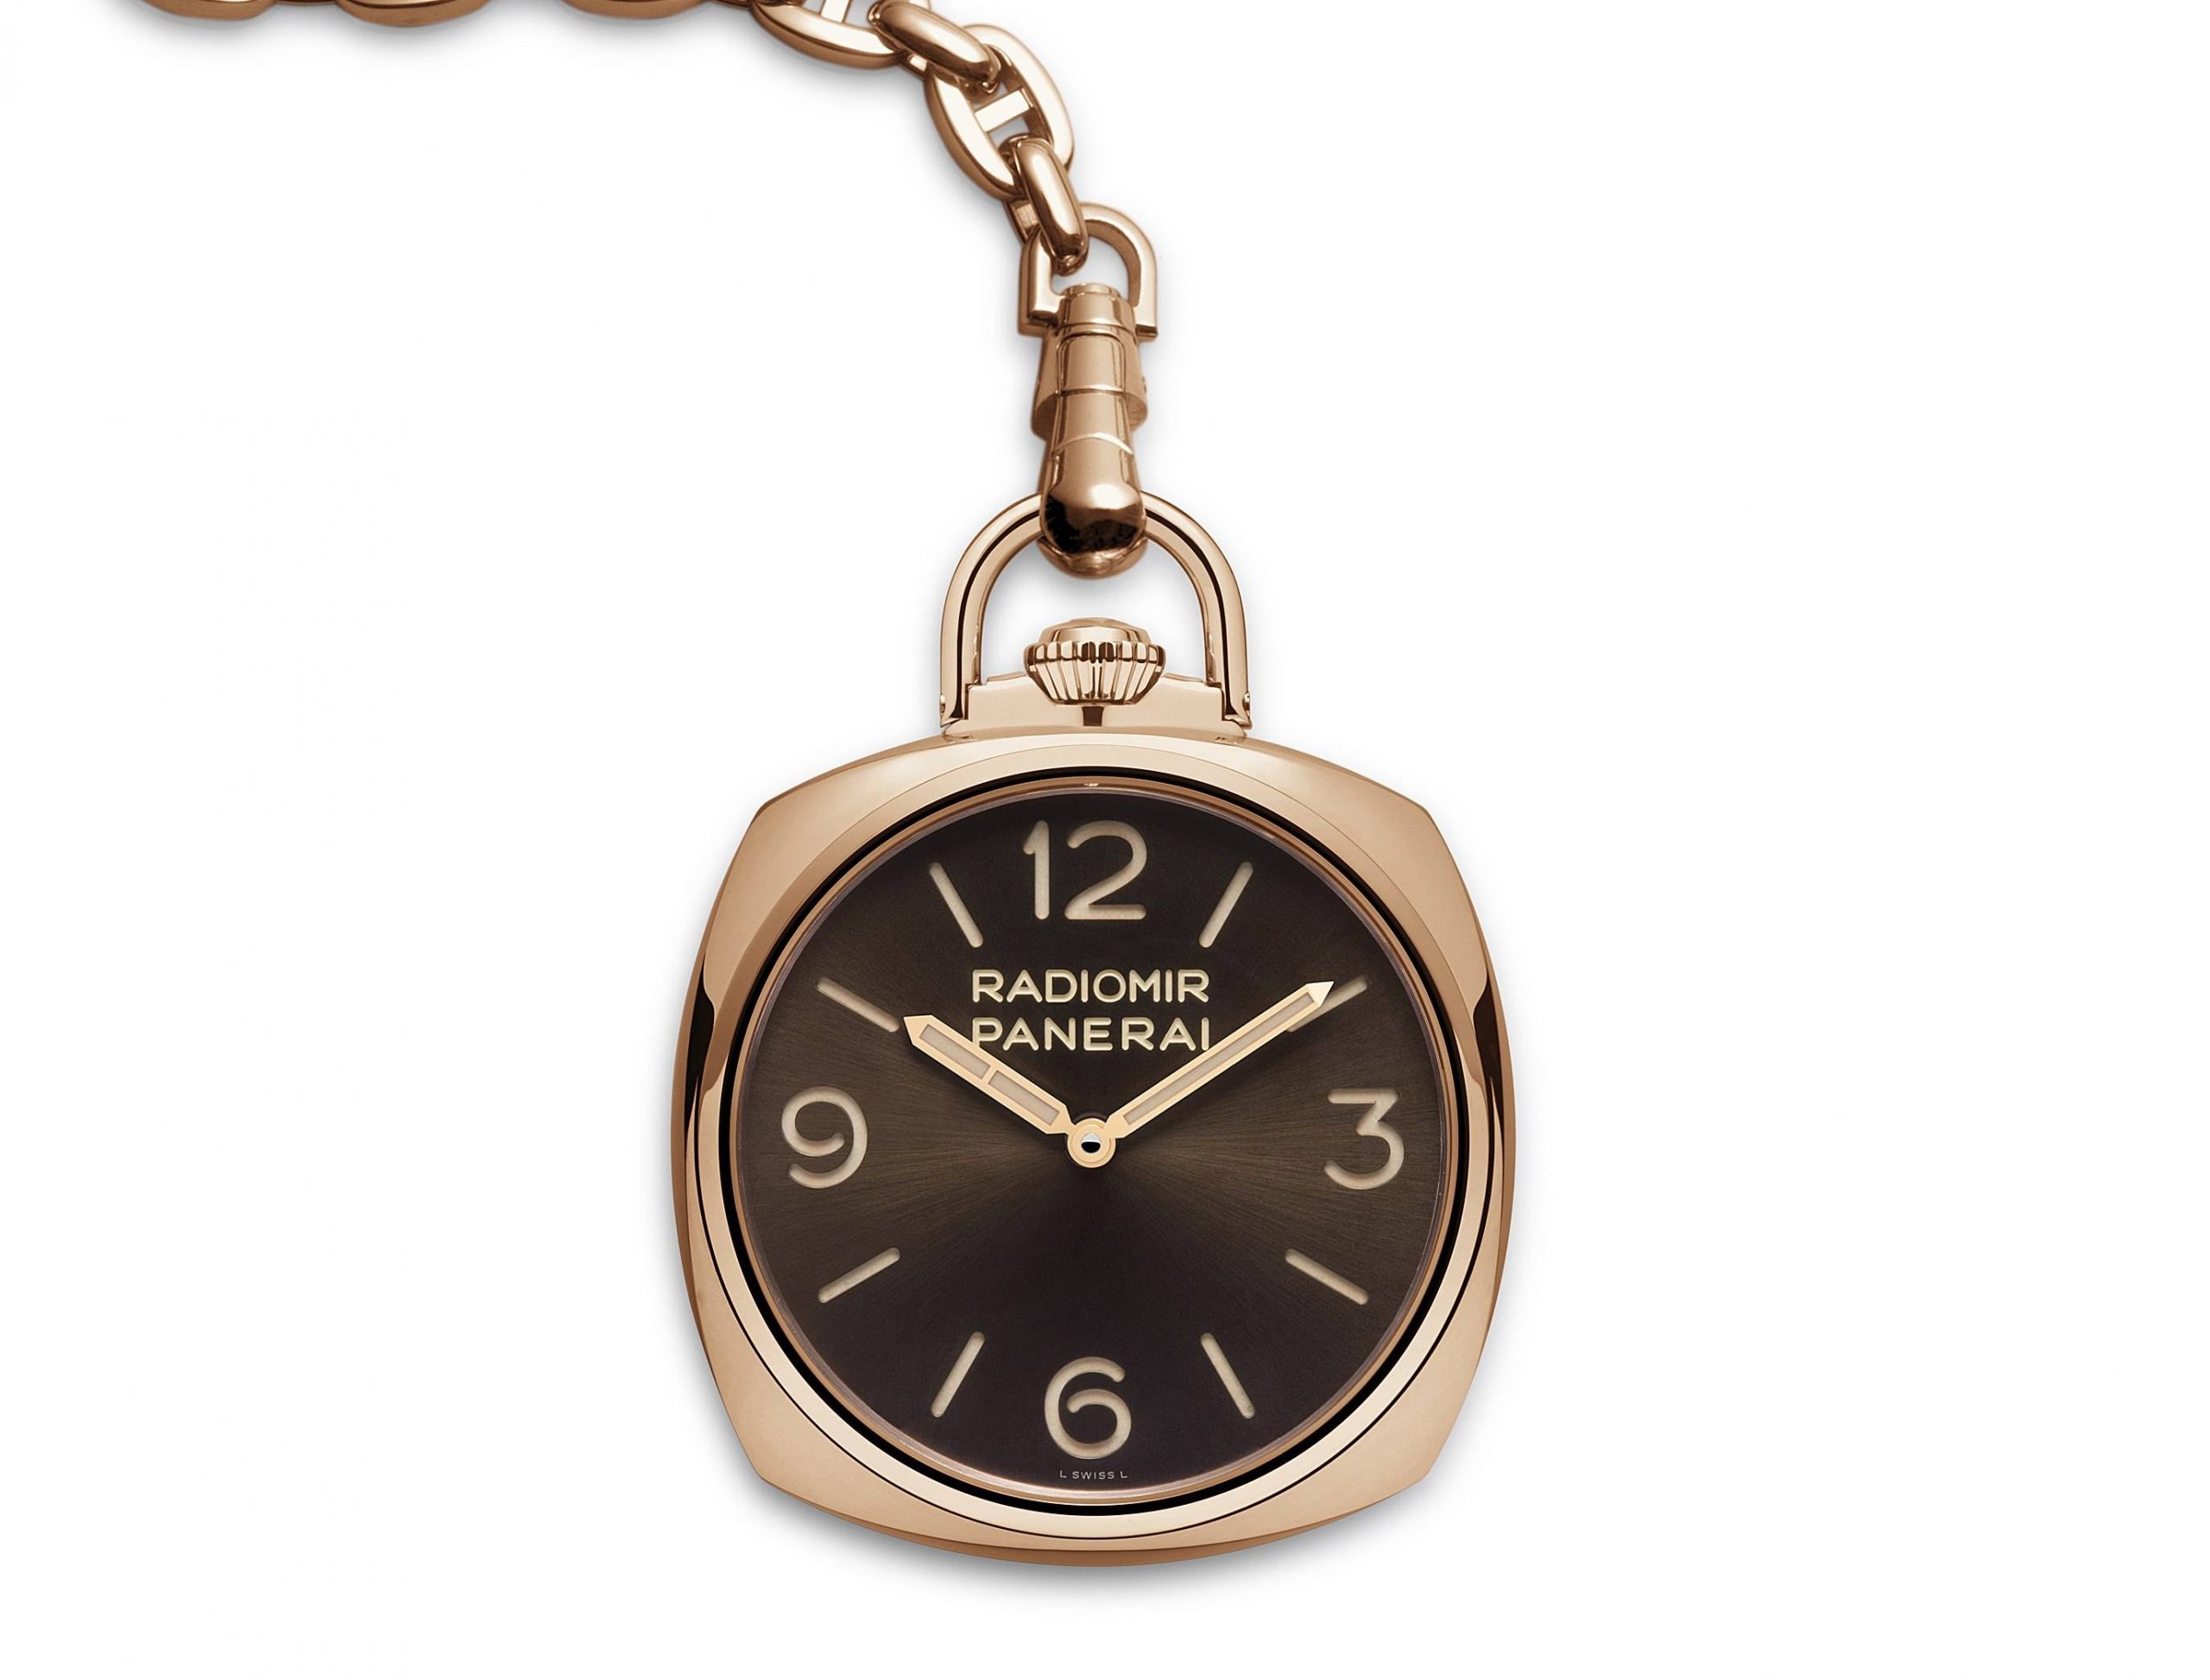 Panerai at SIHH 2014: Pocket Watches and Chronographs